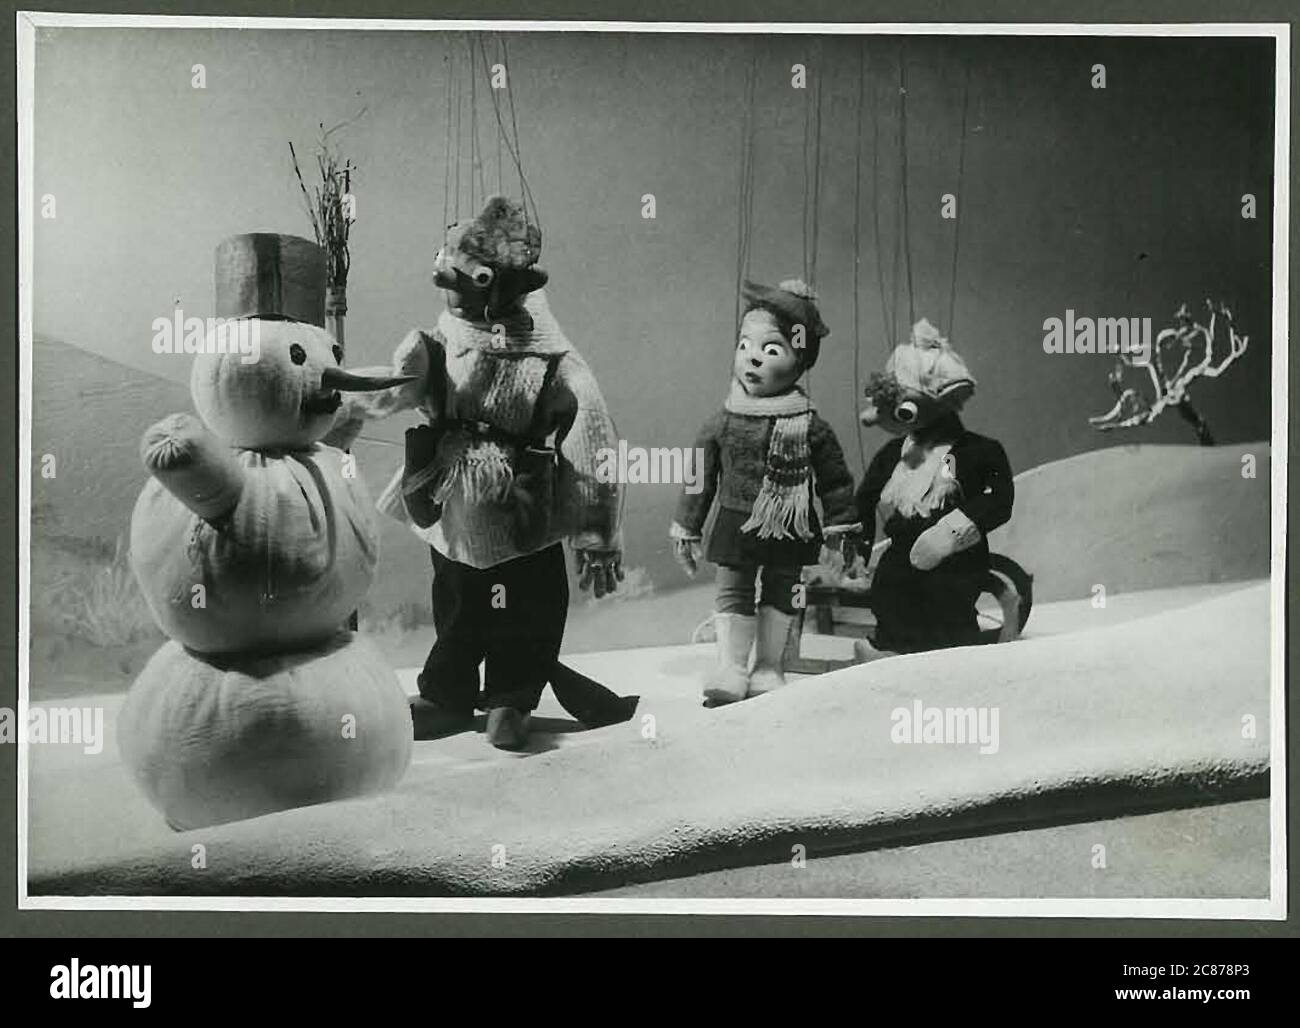 Il professor Josef Skupa (1892-1957) era un puppeteer ceco, che all'inizio degli anni venti creò i suoi puppets più famosi: Il comico padre Spejbl e il suo figlio di rascal Hurvinek, istituendo nel 1930 il primo] teatro professionale moderno dei burattini. Durante l'occupazione nazista della Cecoslovacchia, Skupa ha eseguito rappresentazioni satiriche e allegoriche di marionette su centinaia di tappe in tutta la Cecoslovacchia, portando alla reclusione di marionette da parte dei nazisti (in un deposito!) per essere generalmente troppo sovversivo. Dopo il 1945, Skupa continuò a produrre lavoro per bambini e adulti in Cecoslovacchia e si esibì anche all'estero. Il Foto Stock